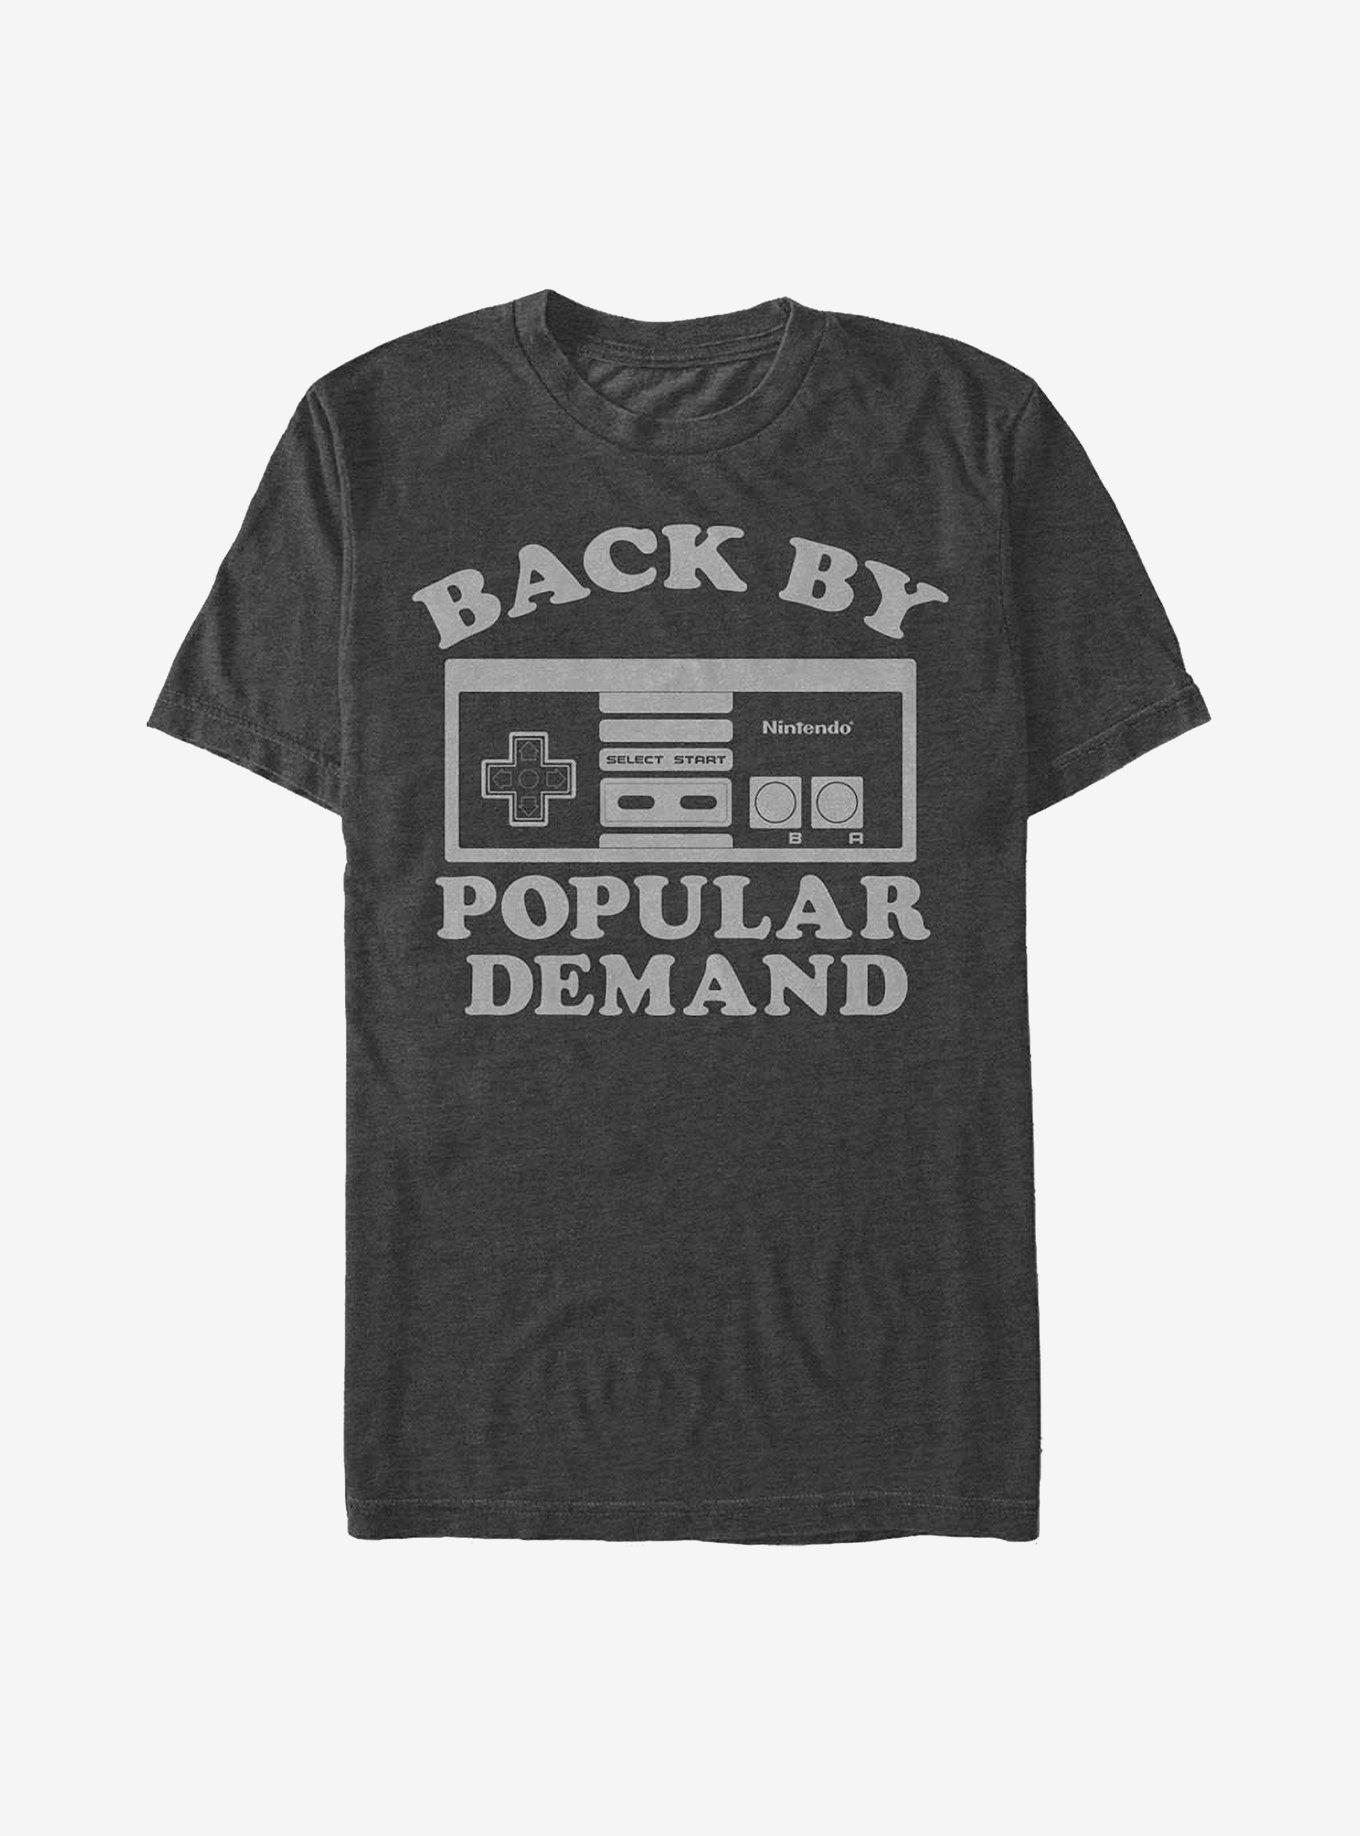 Nintendo Popular Demand T-Shirt